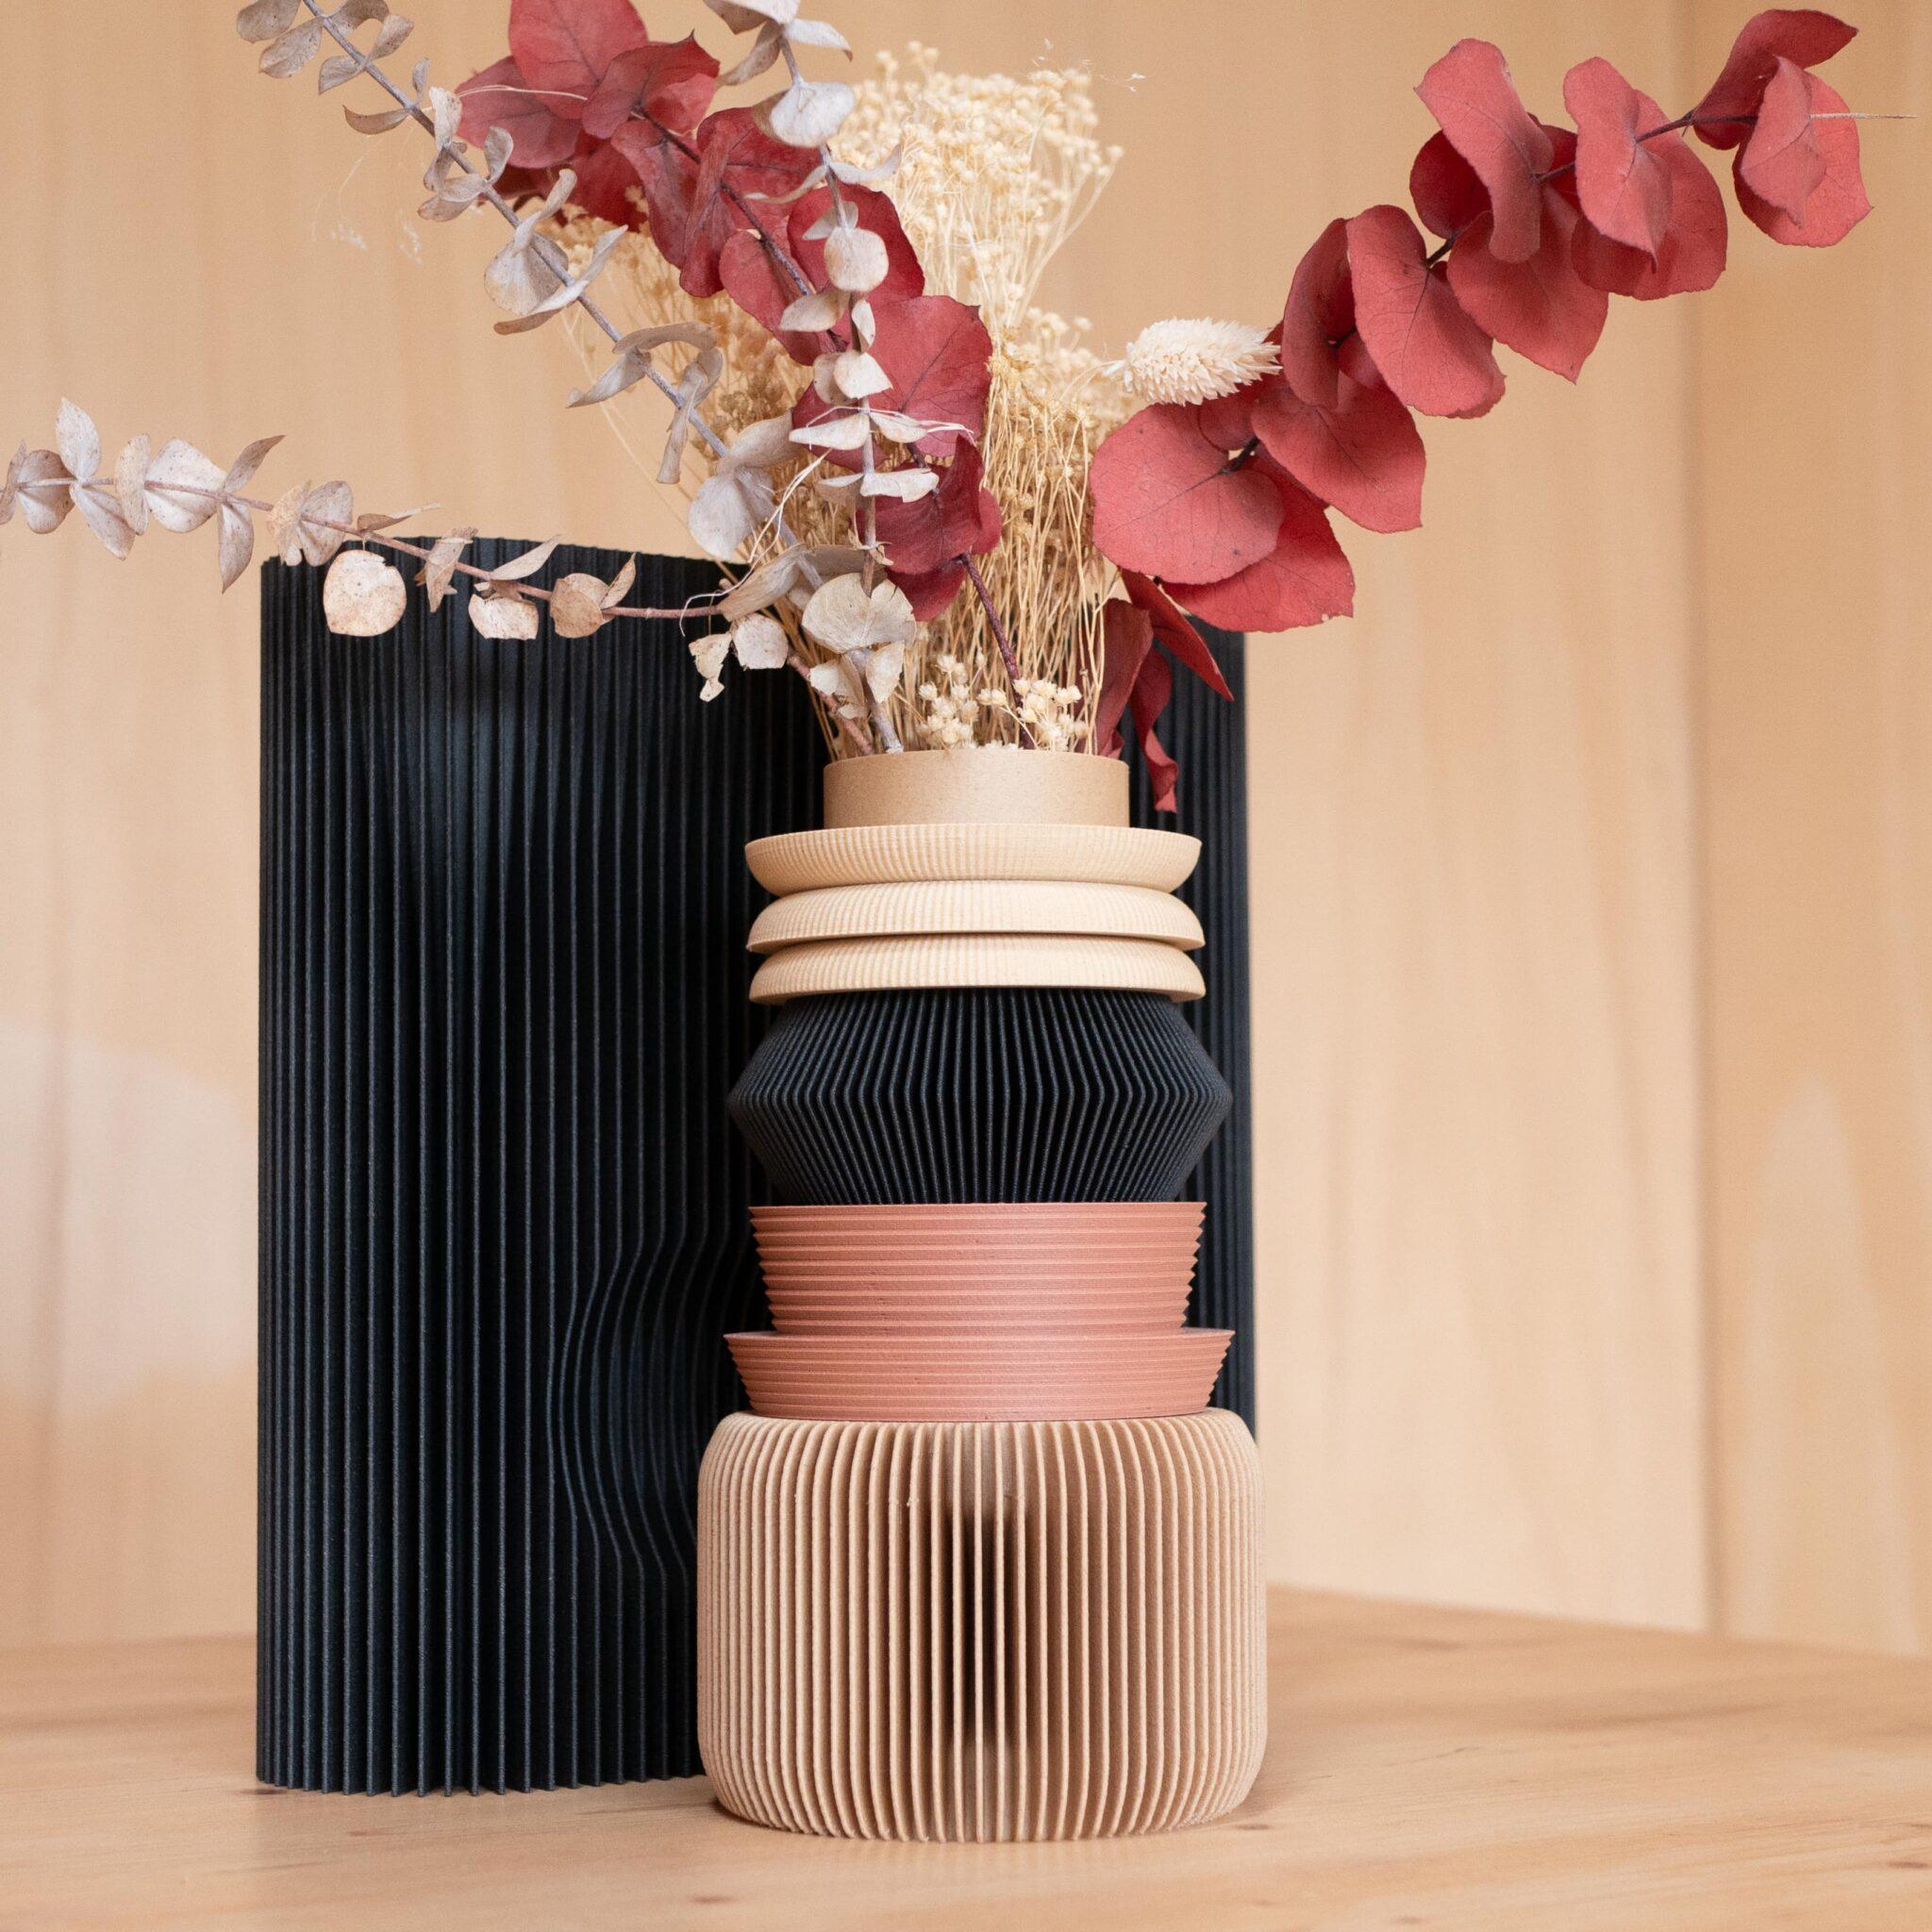 NU 05 Modular Vase - Minimum Design 